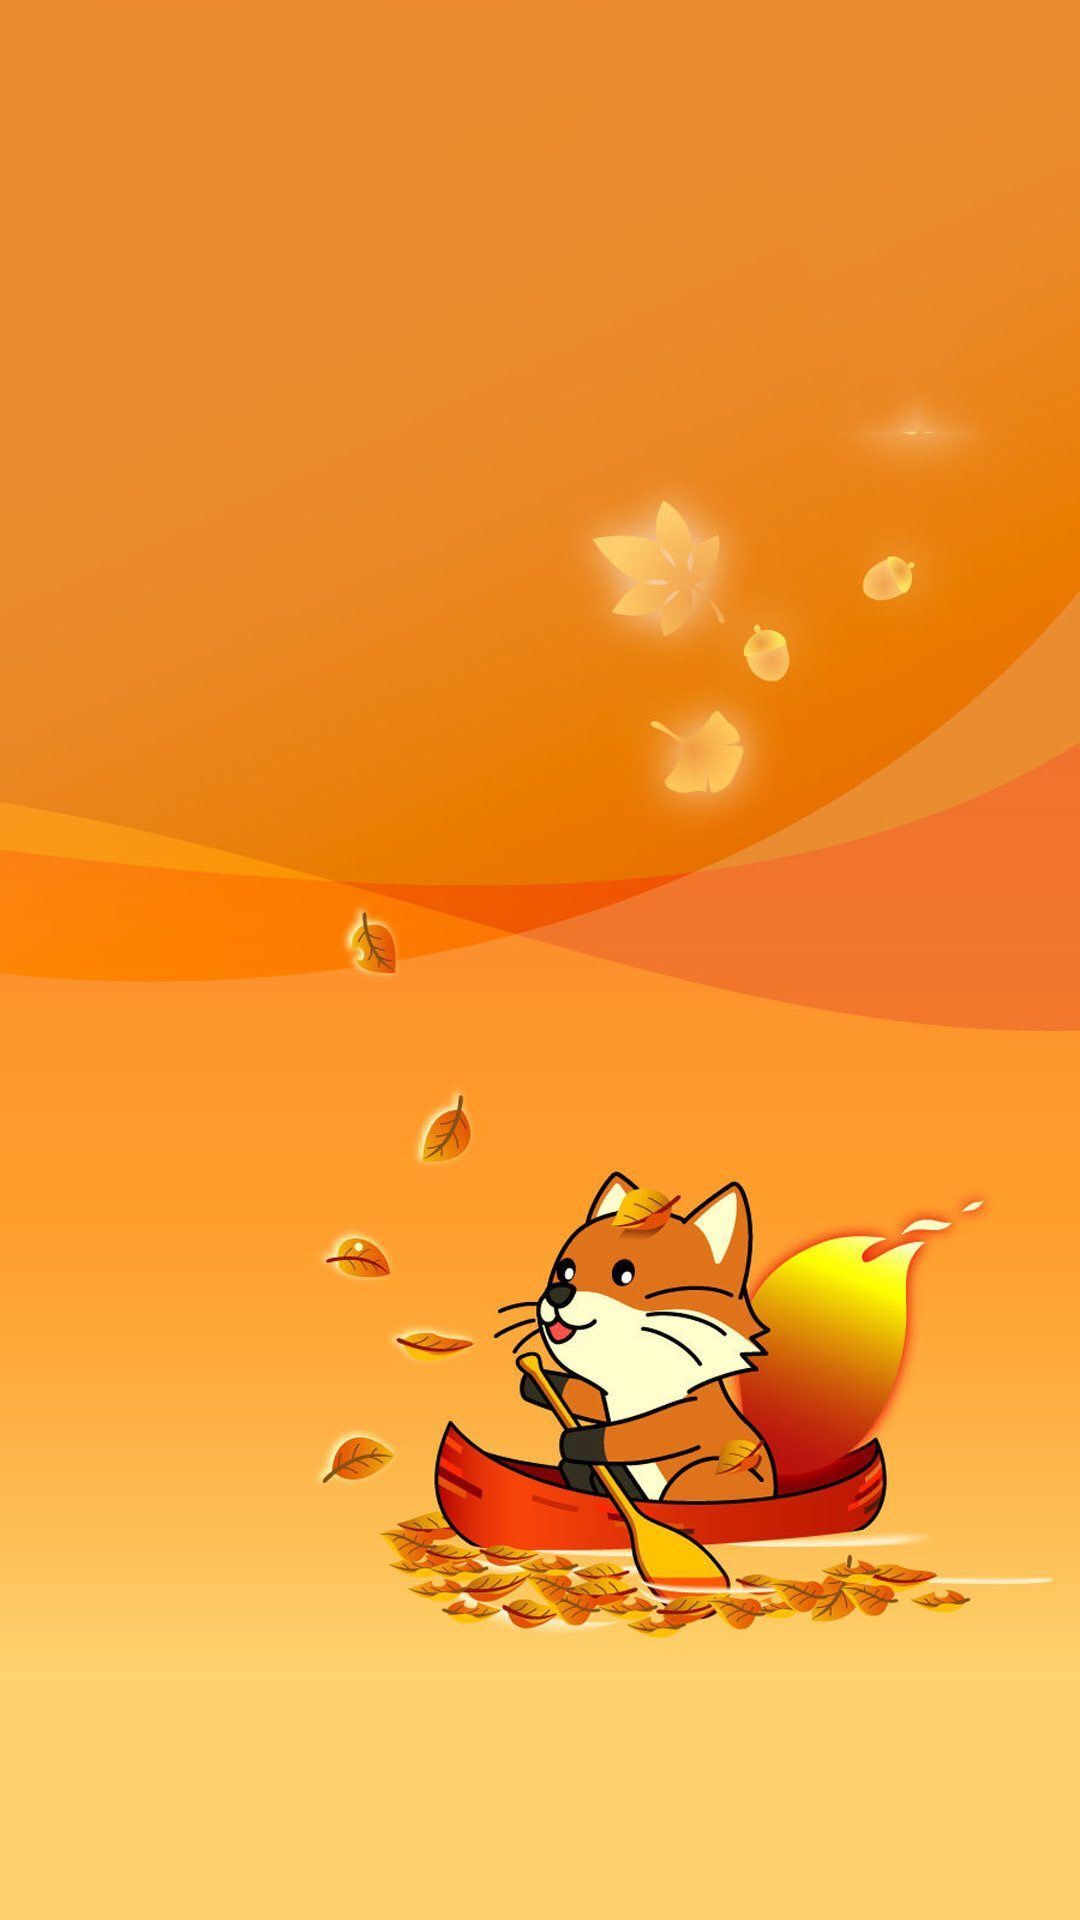 Fox so cute. Fall wallpaper, Cute fall wallpaper